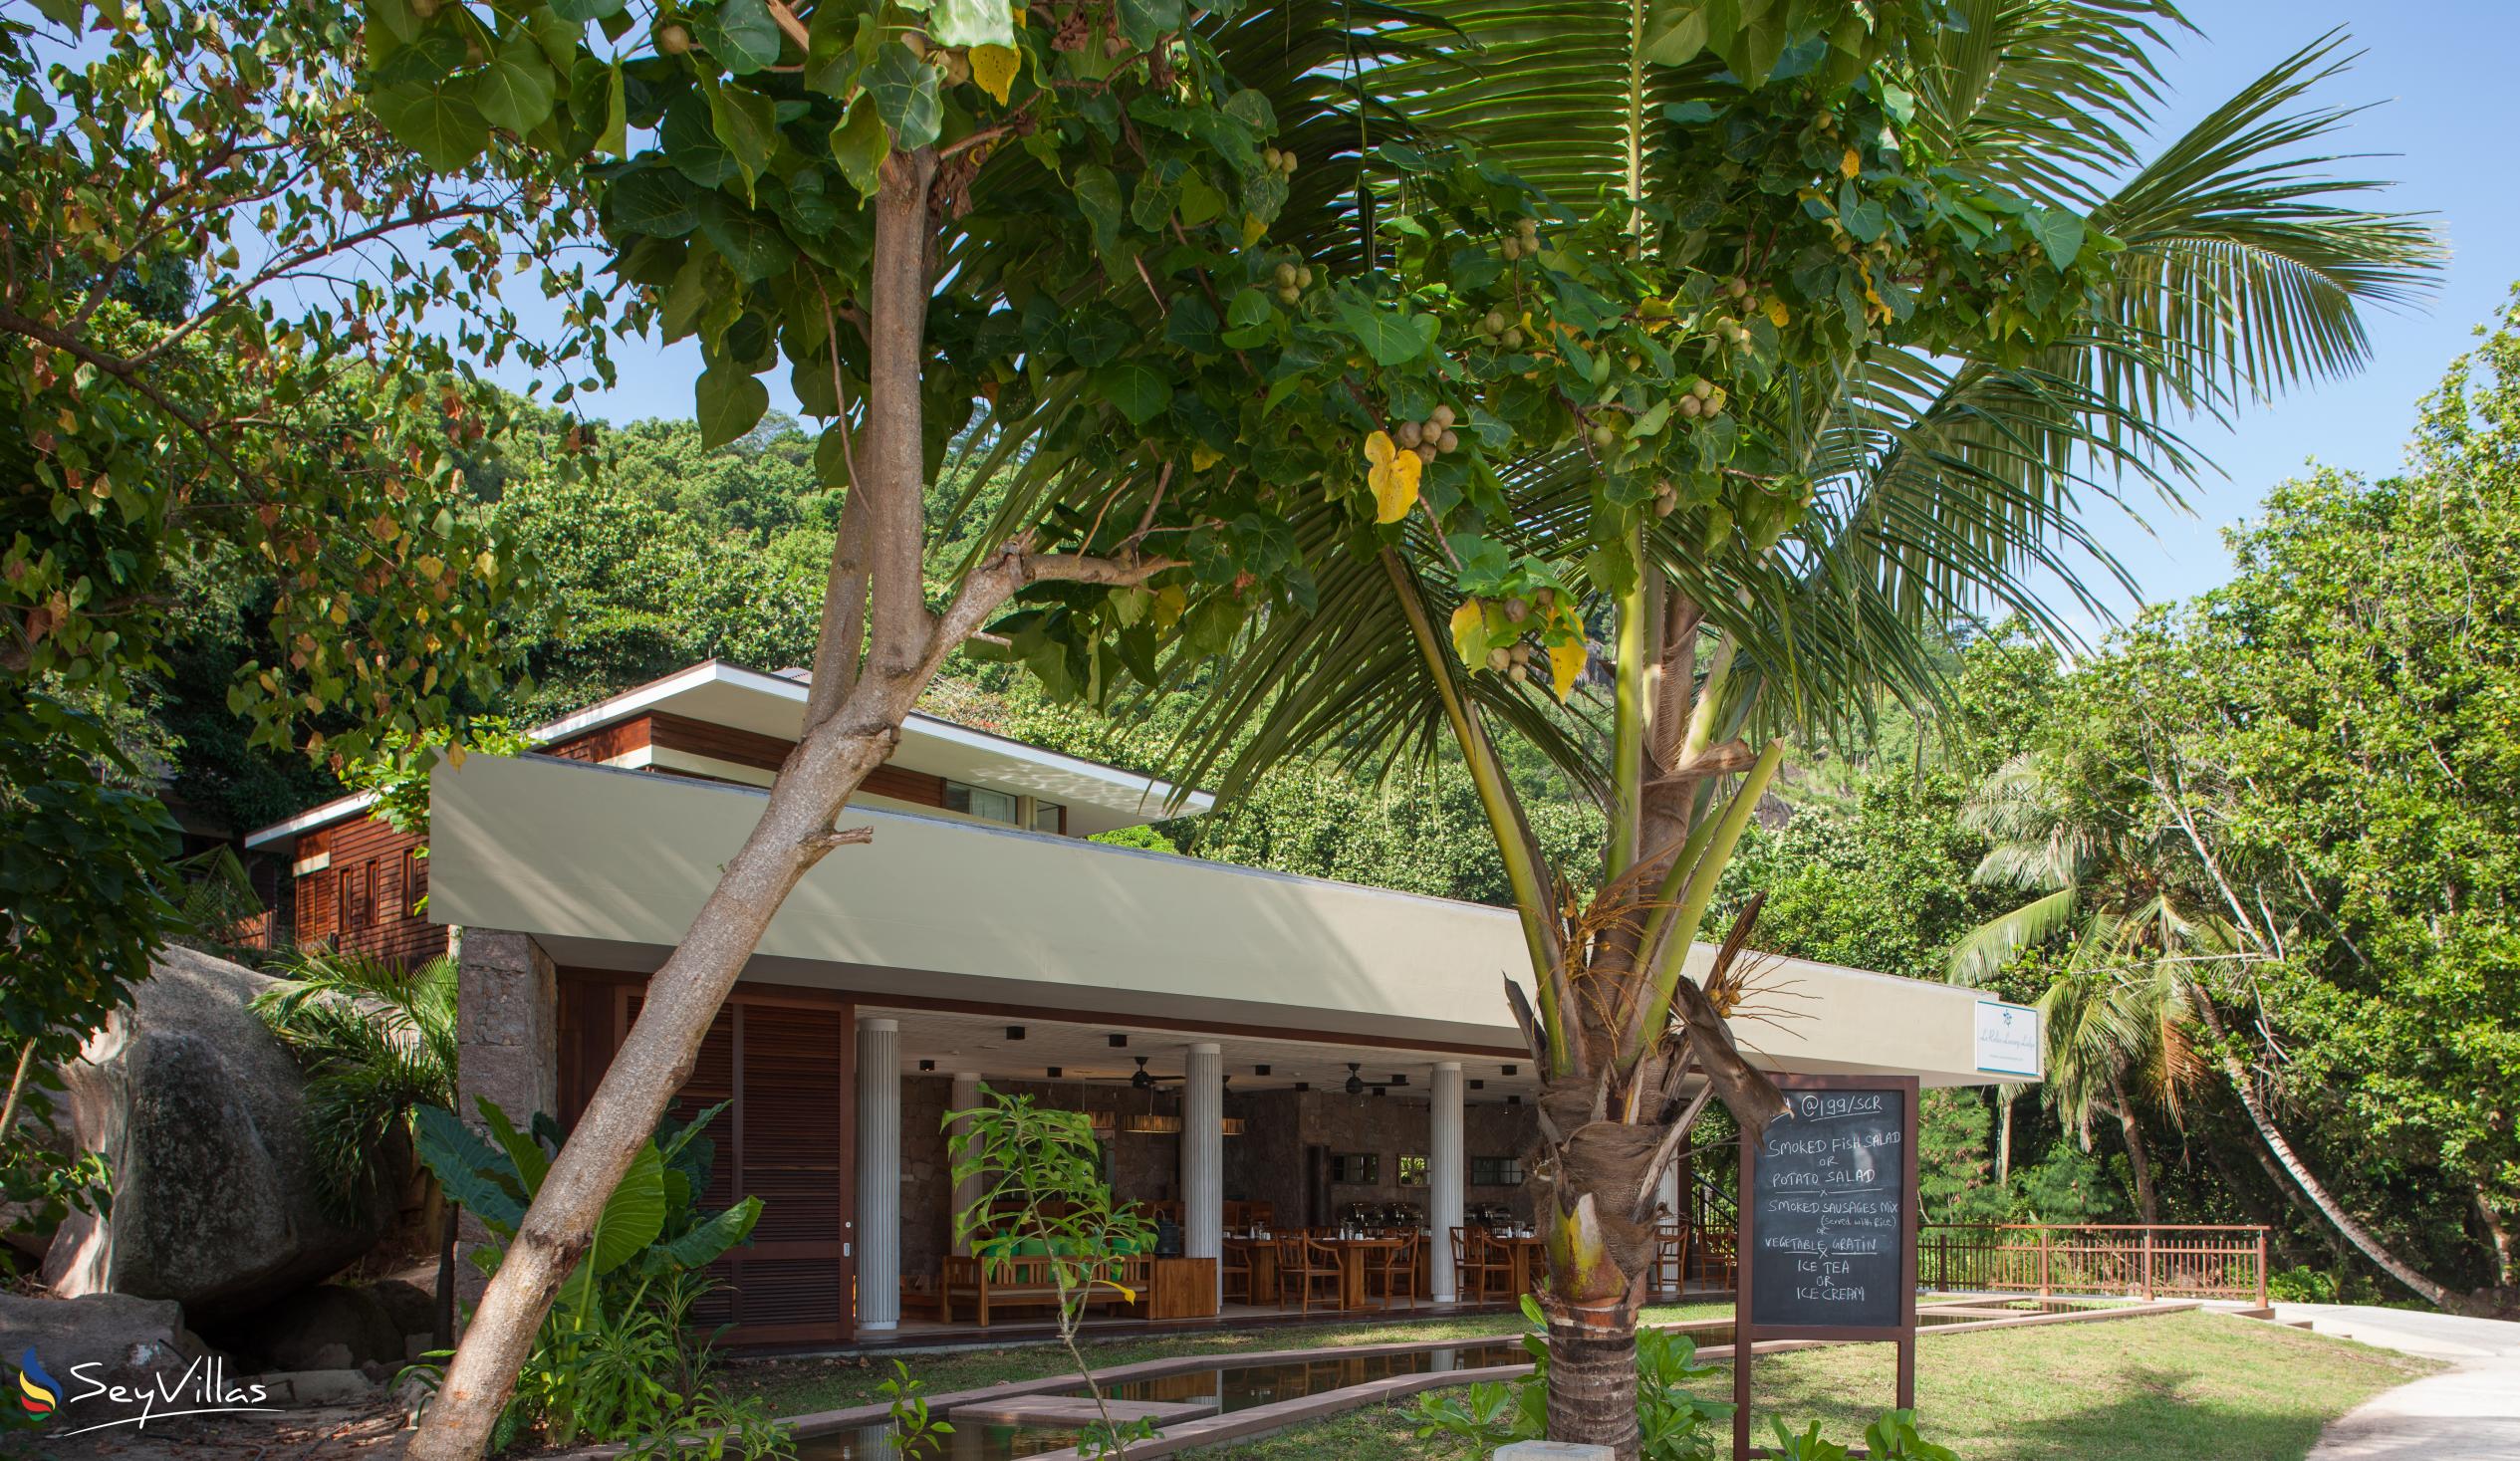 Foto 4: Le Relax Luxury Lodge - Aussenbereich - La Digue (Seychellen)